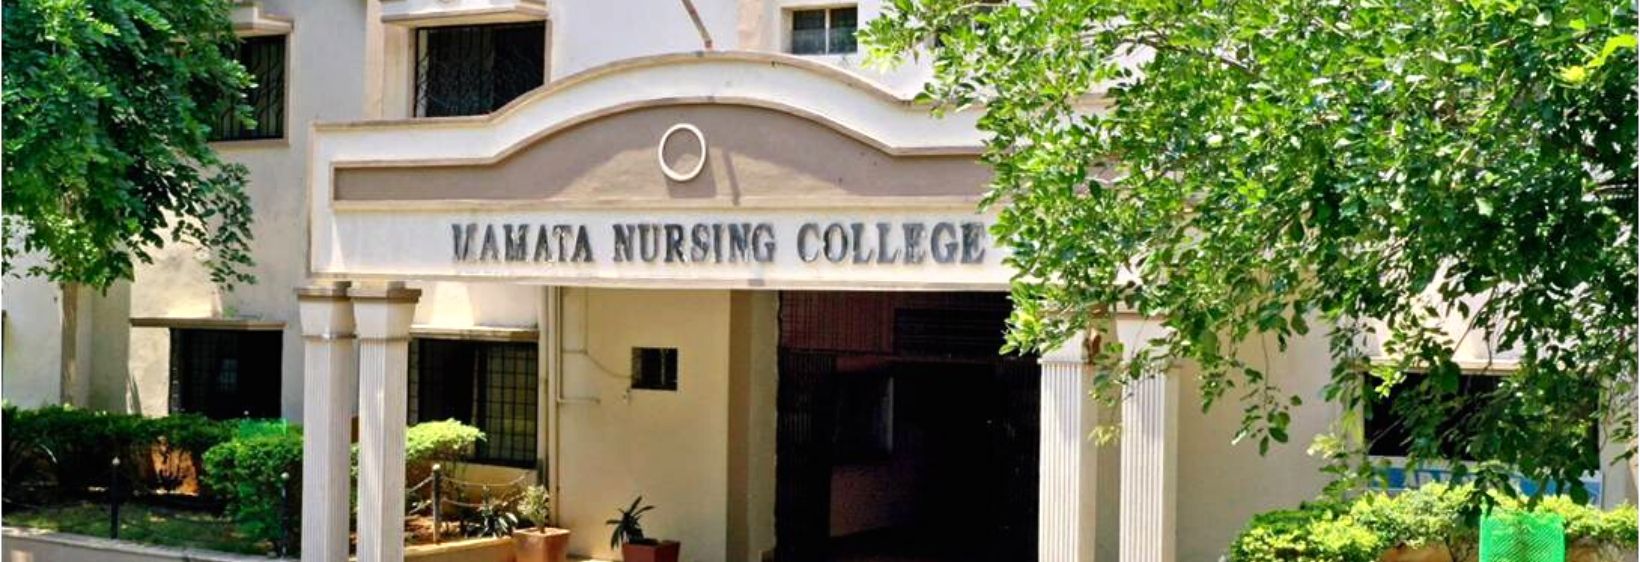 Mamata College of Nursing - Hyderabad